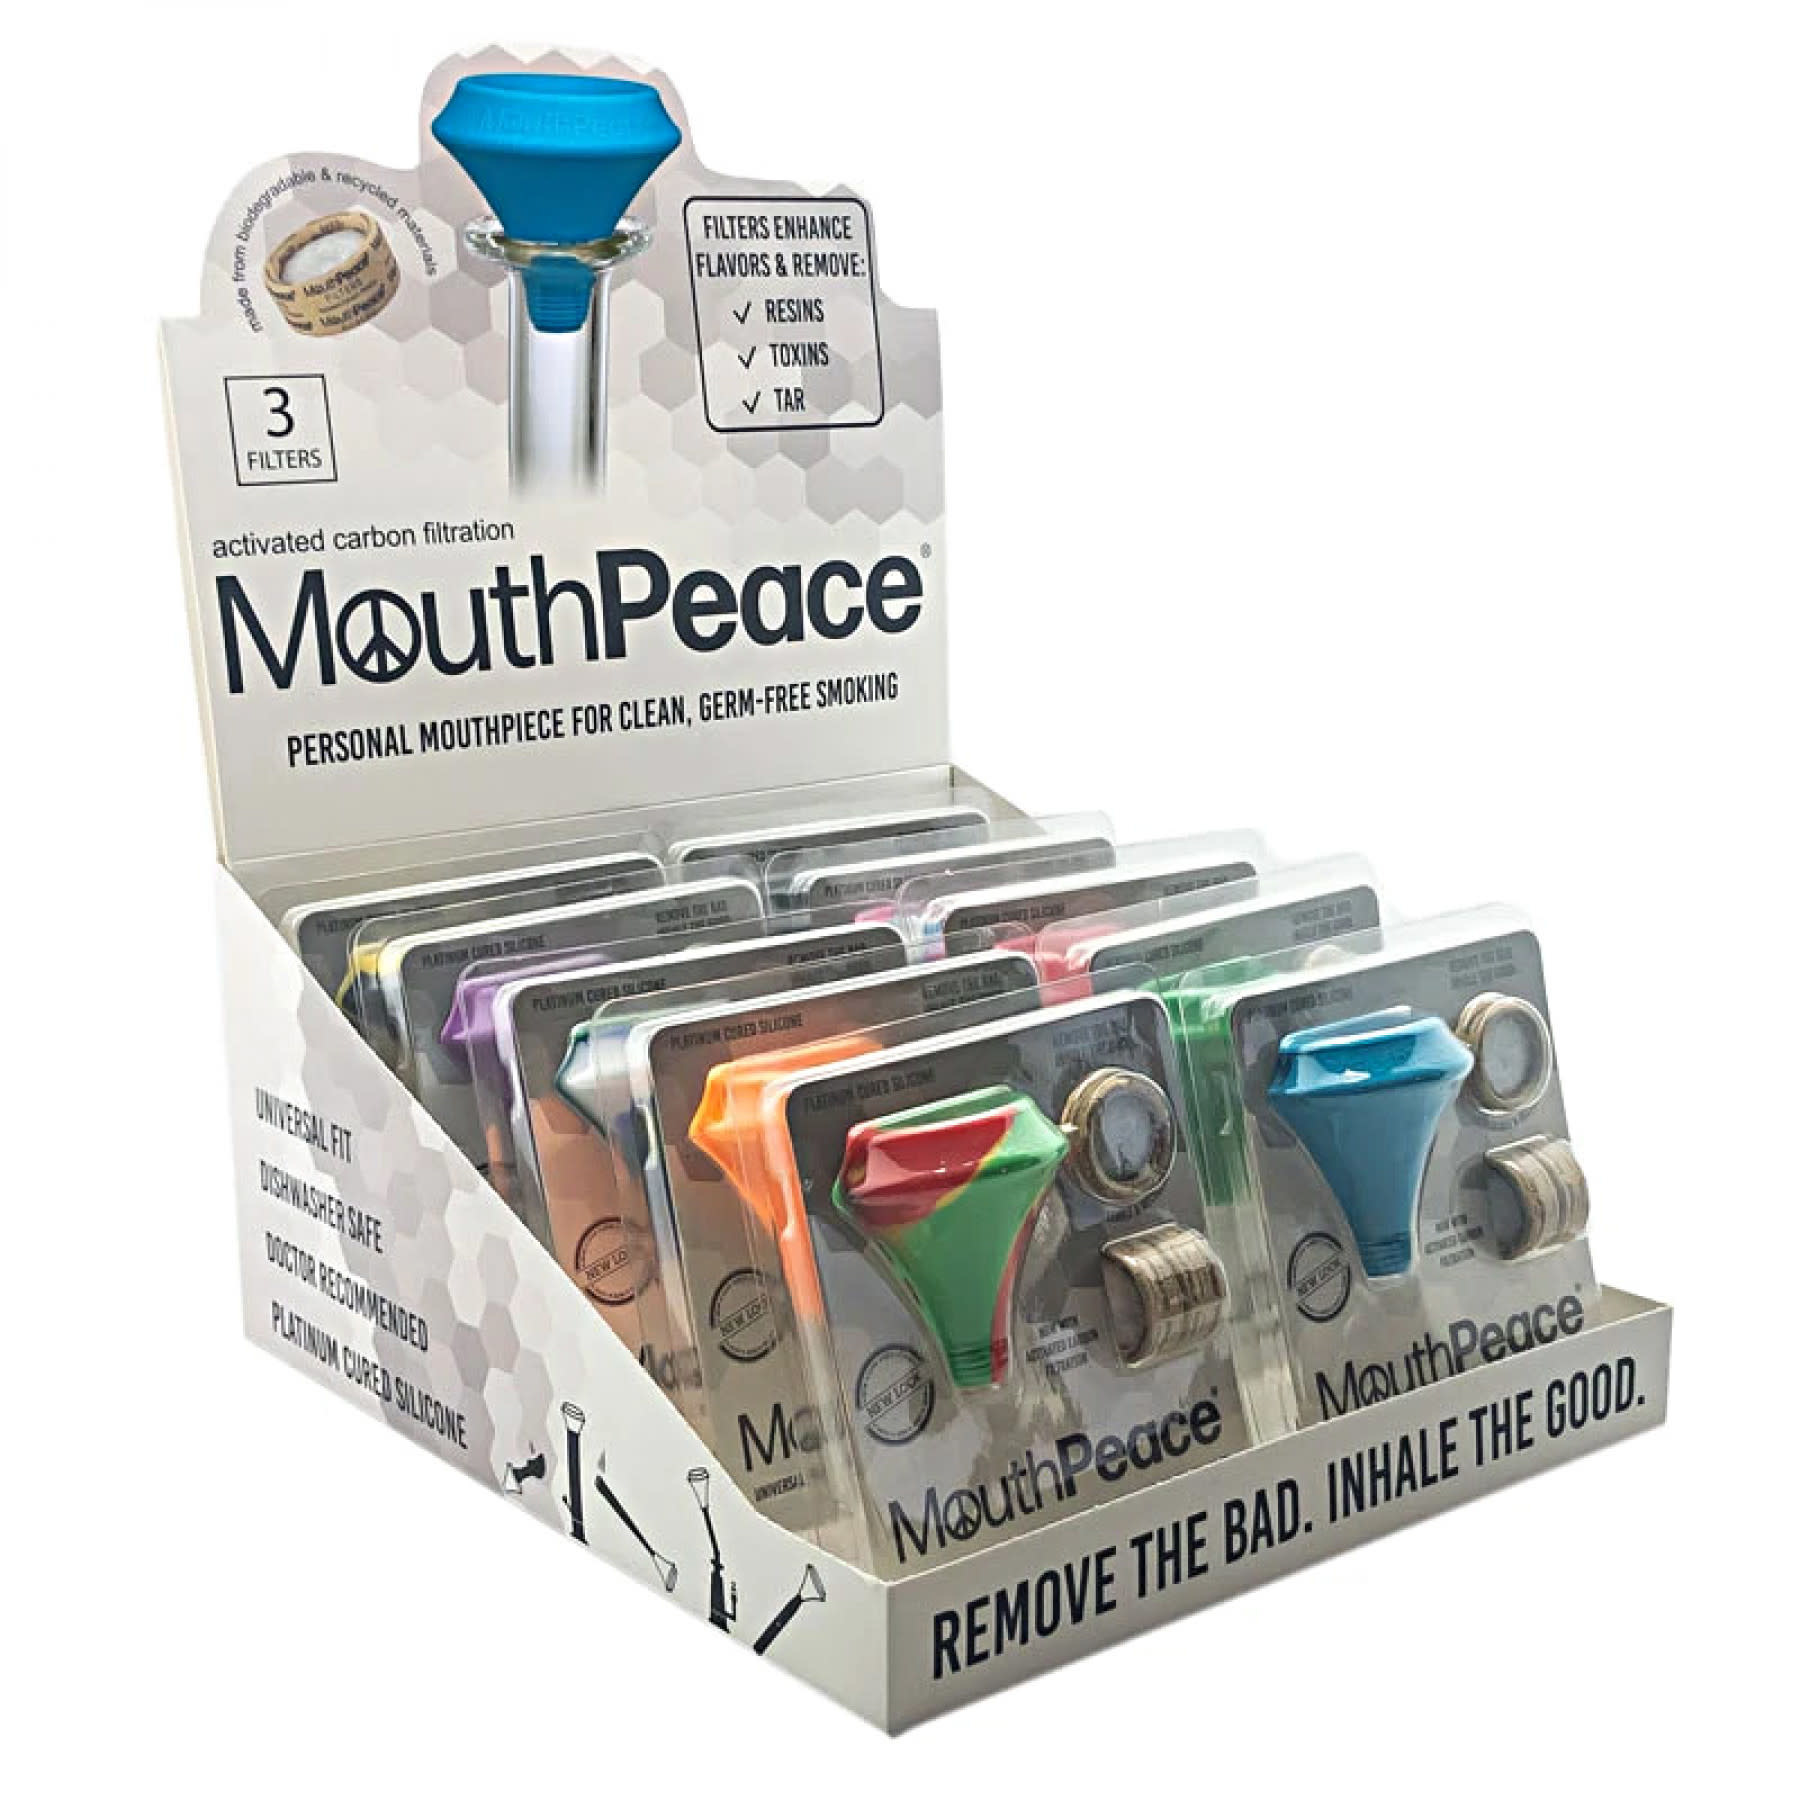 Mouth peace - The Gras Shop